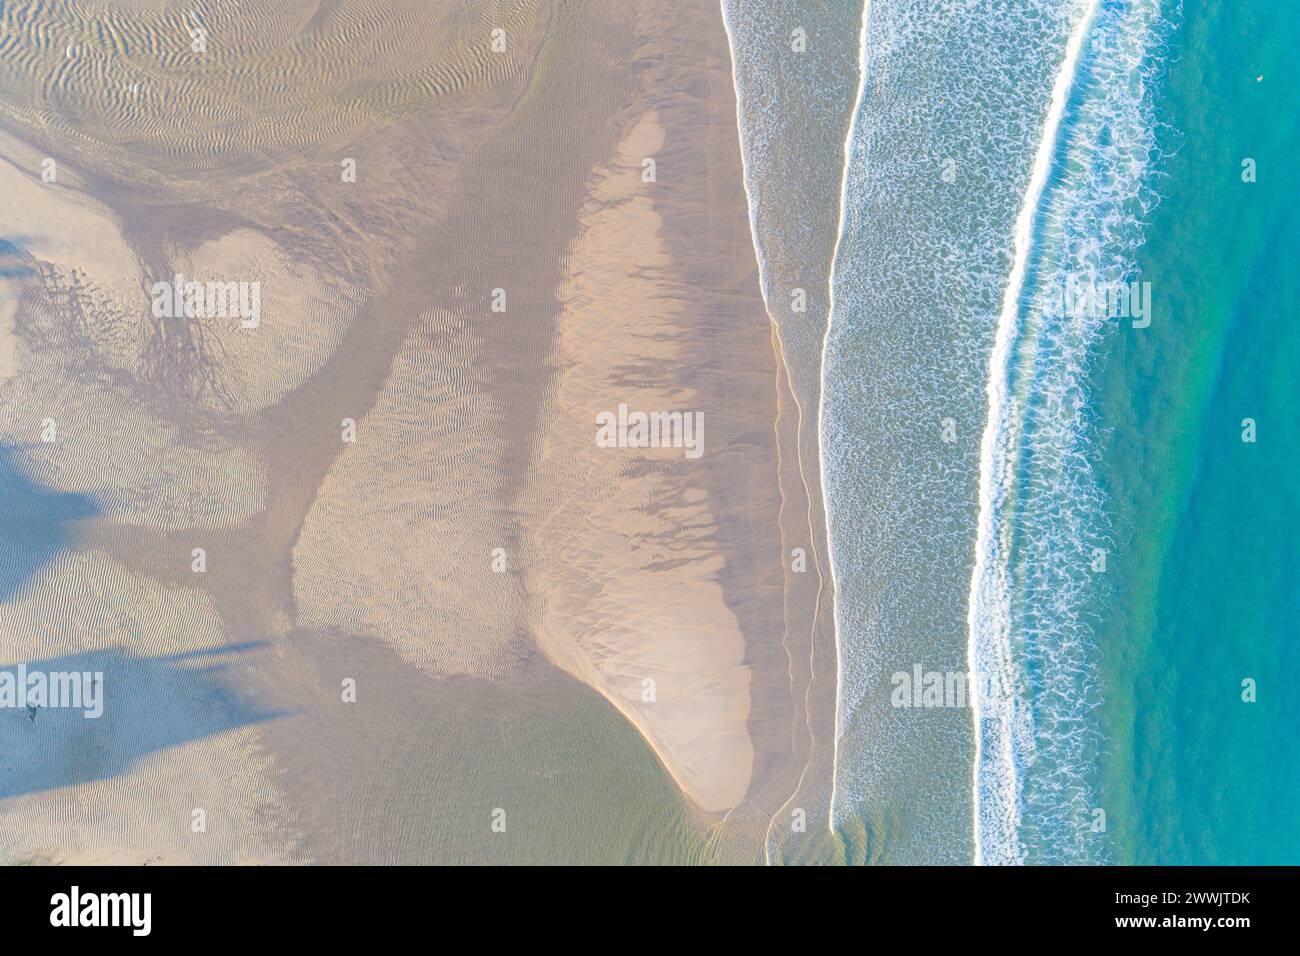 vue aérienne aérienne d'une plage d'eau turquoise au lever du soleil, photographie par drone Banque D'Images